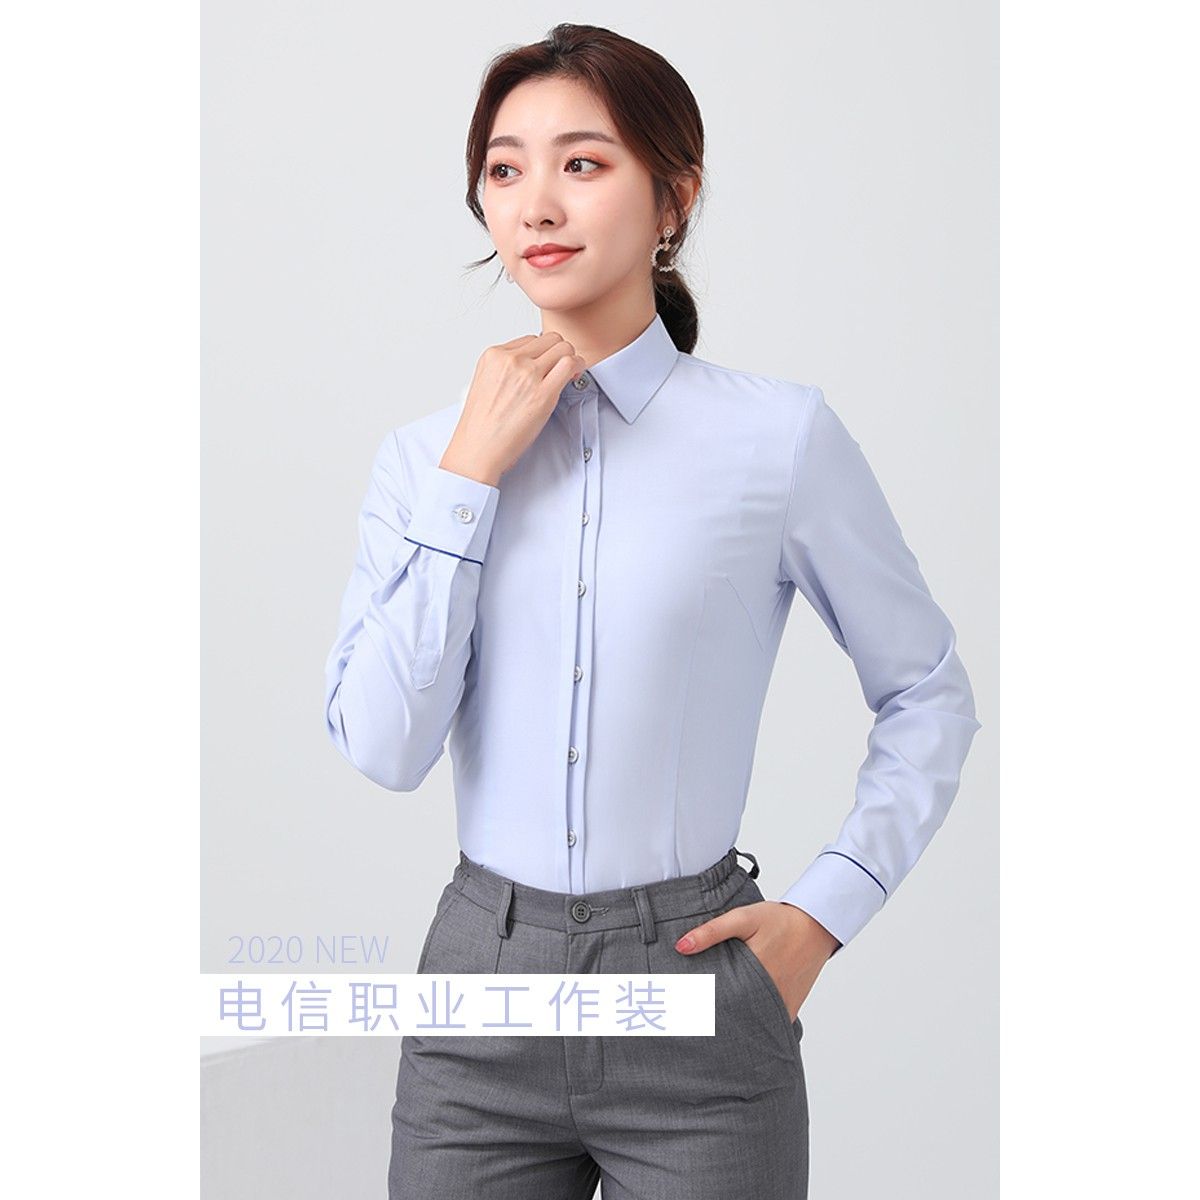 2021新款电信工作服女士长袖衬衫春夏职业工装营业厅员蓝色衬衣